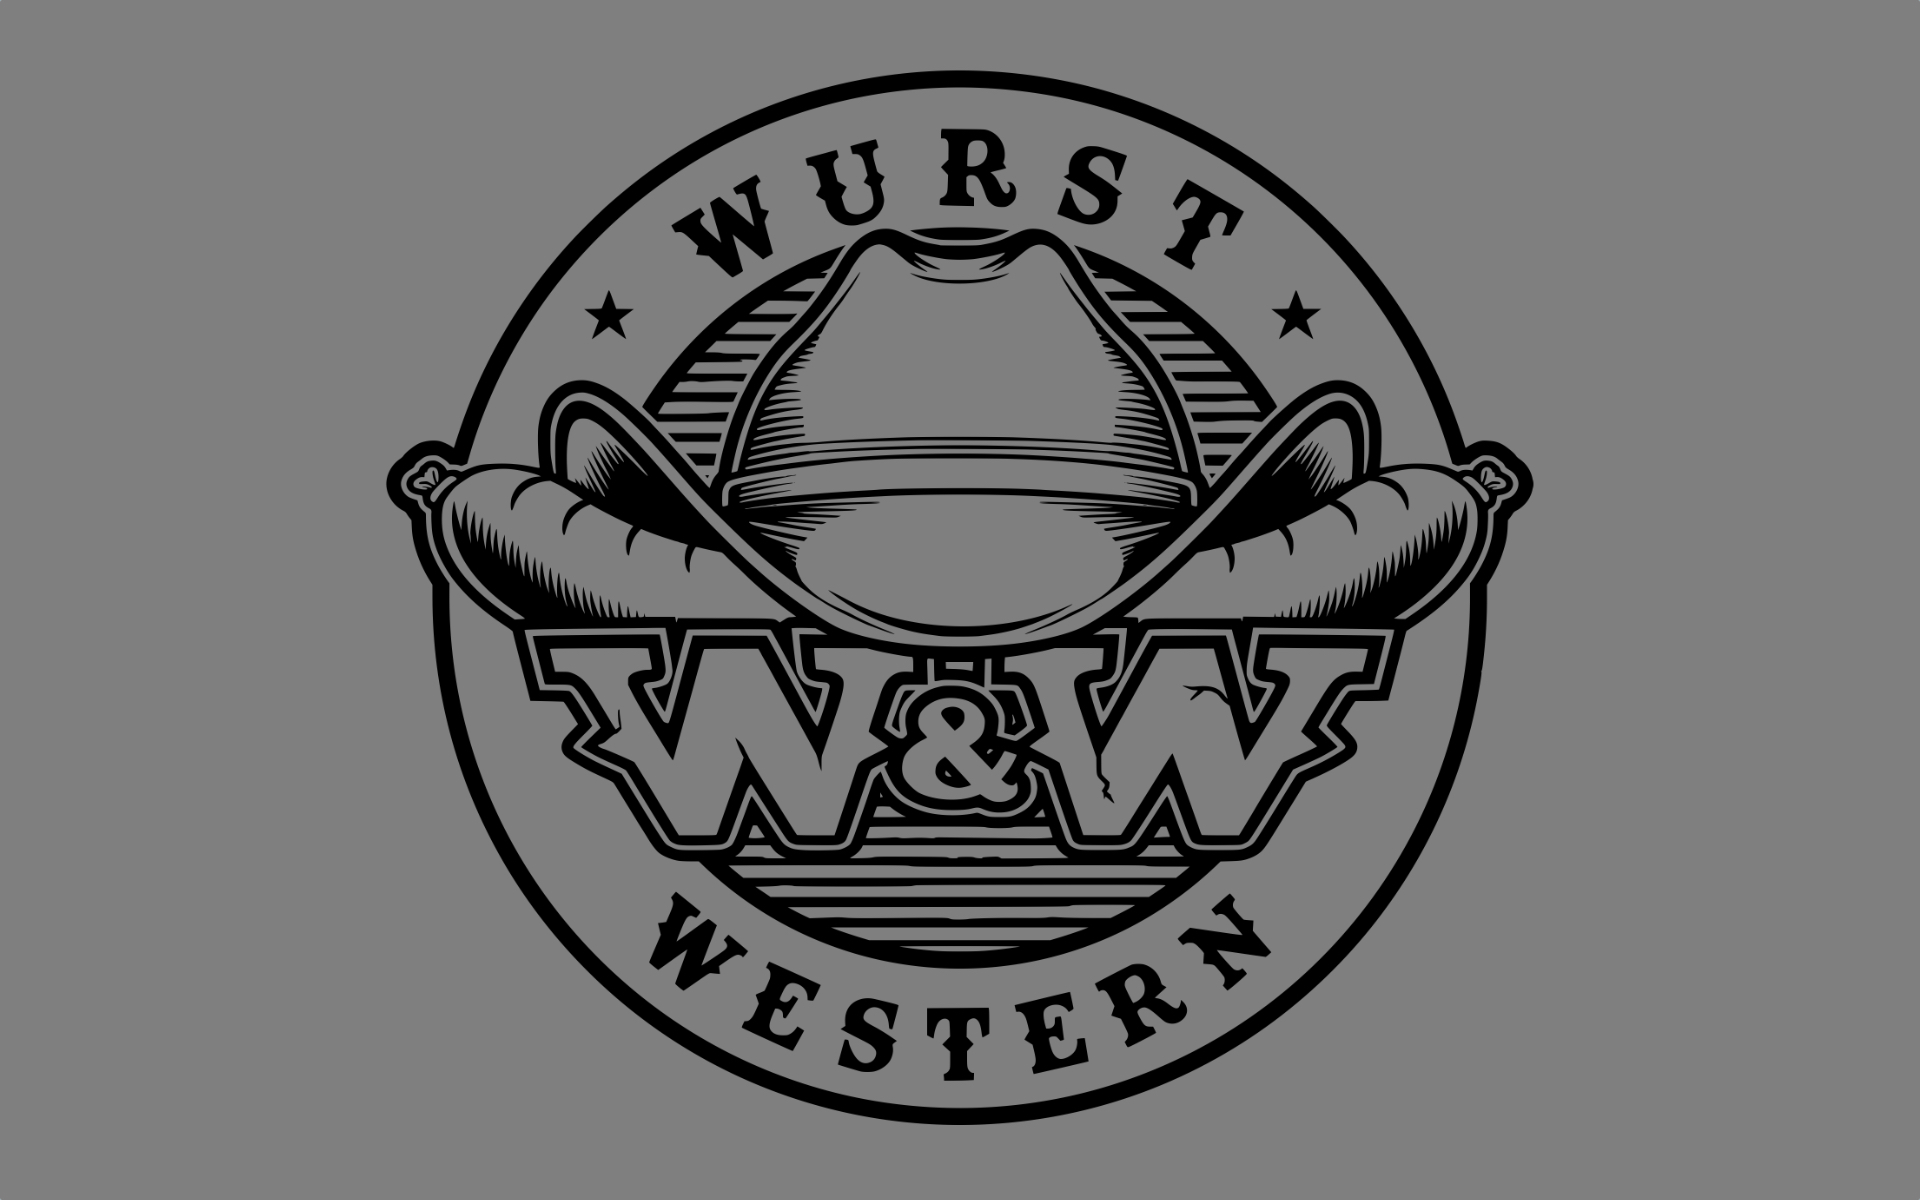 Wuest_Western_2